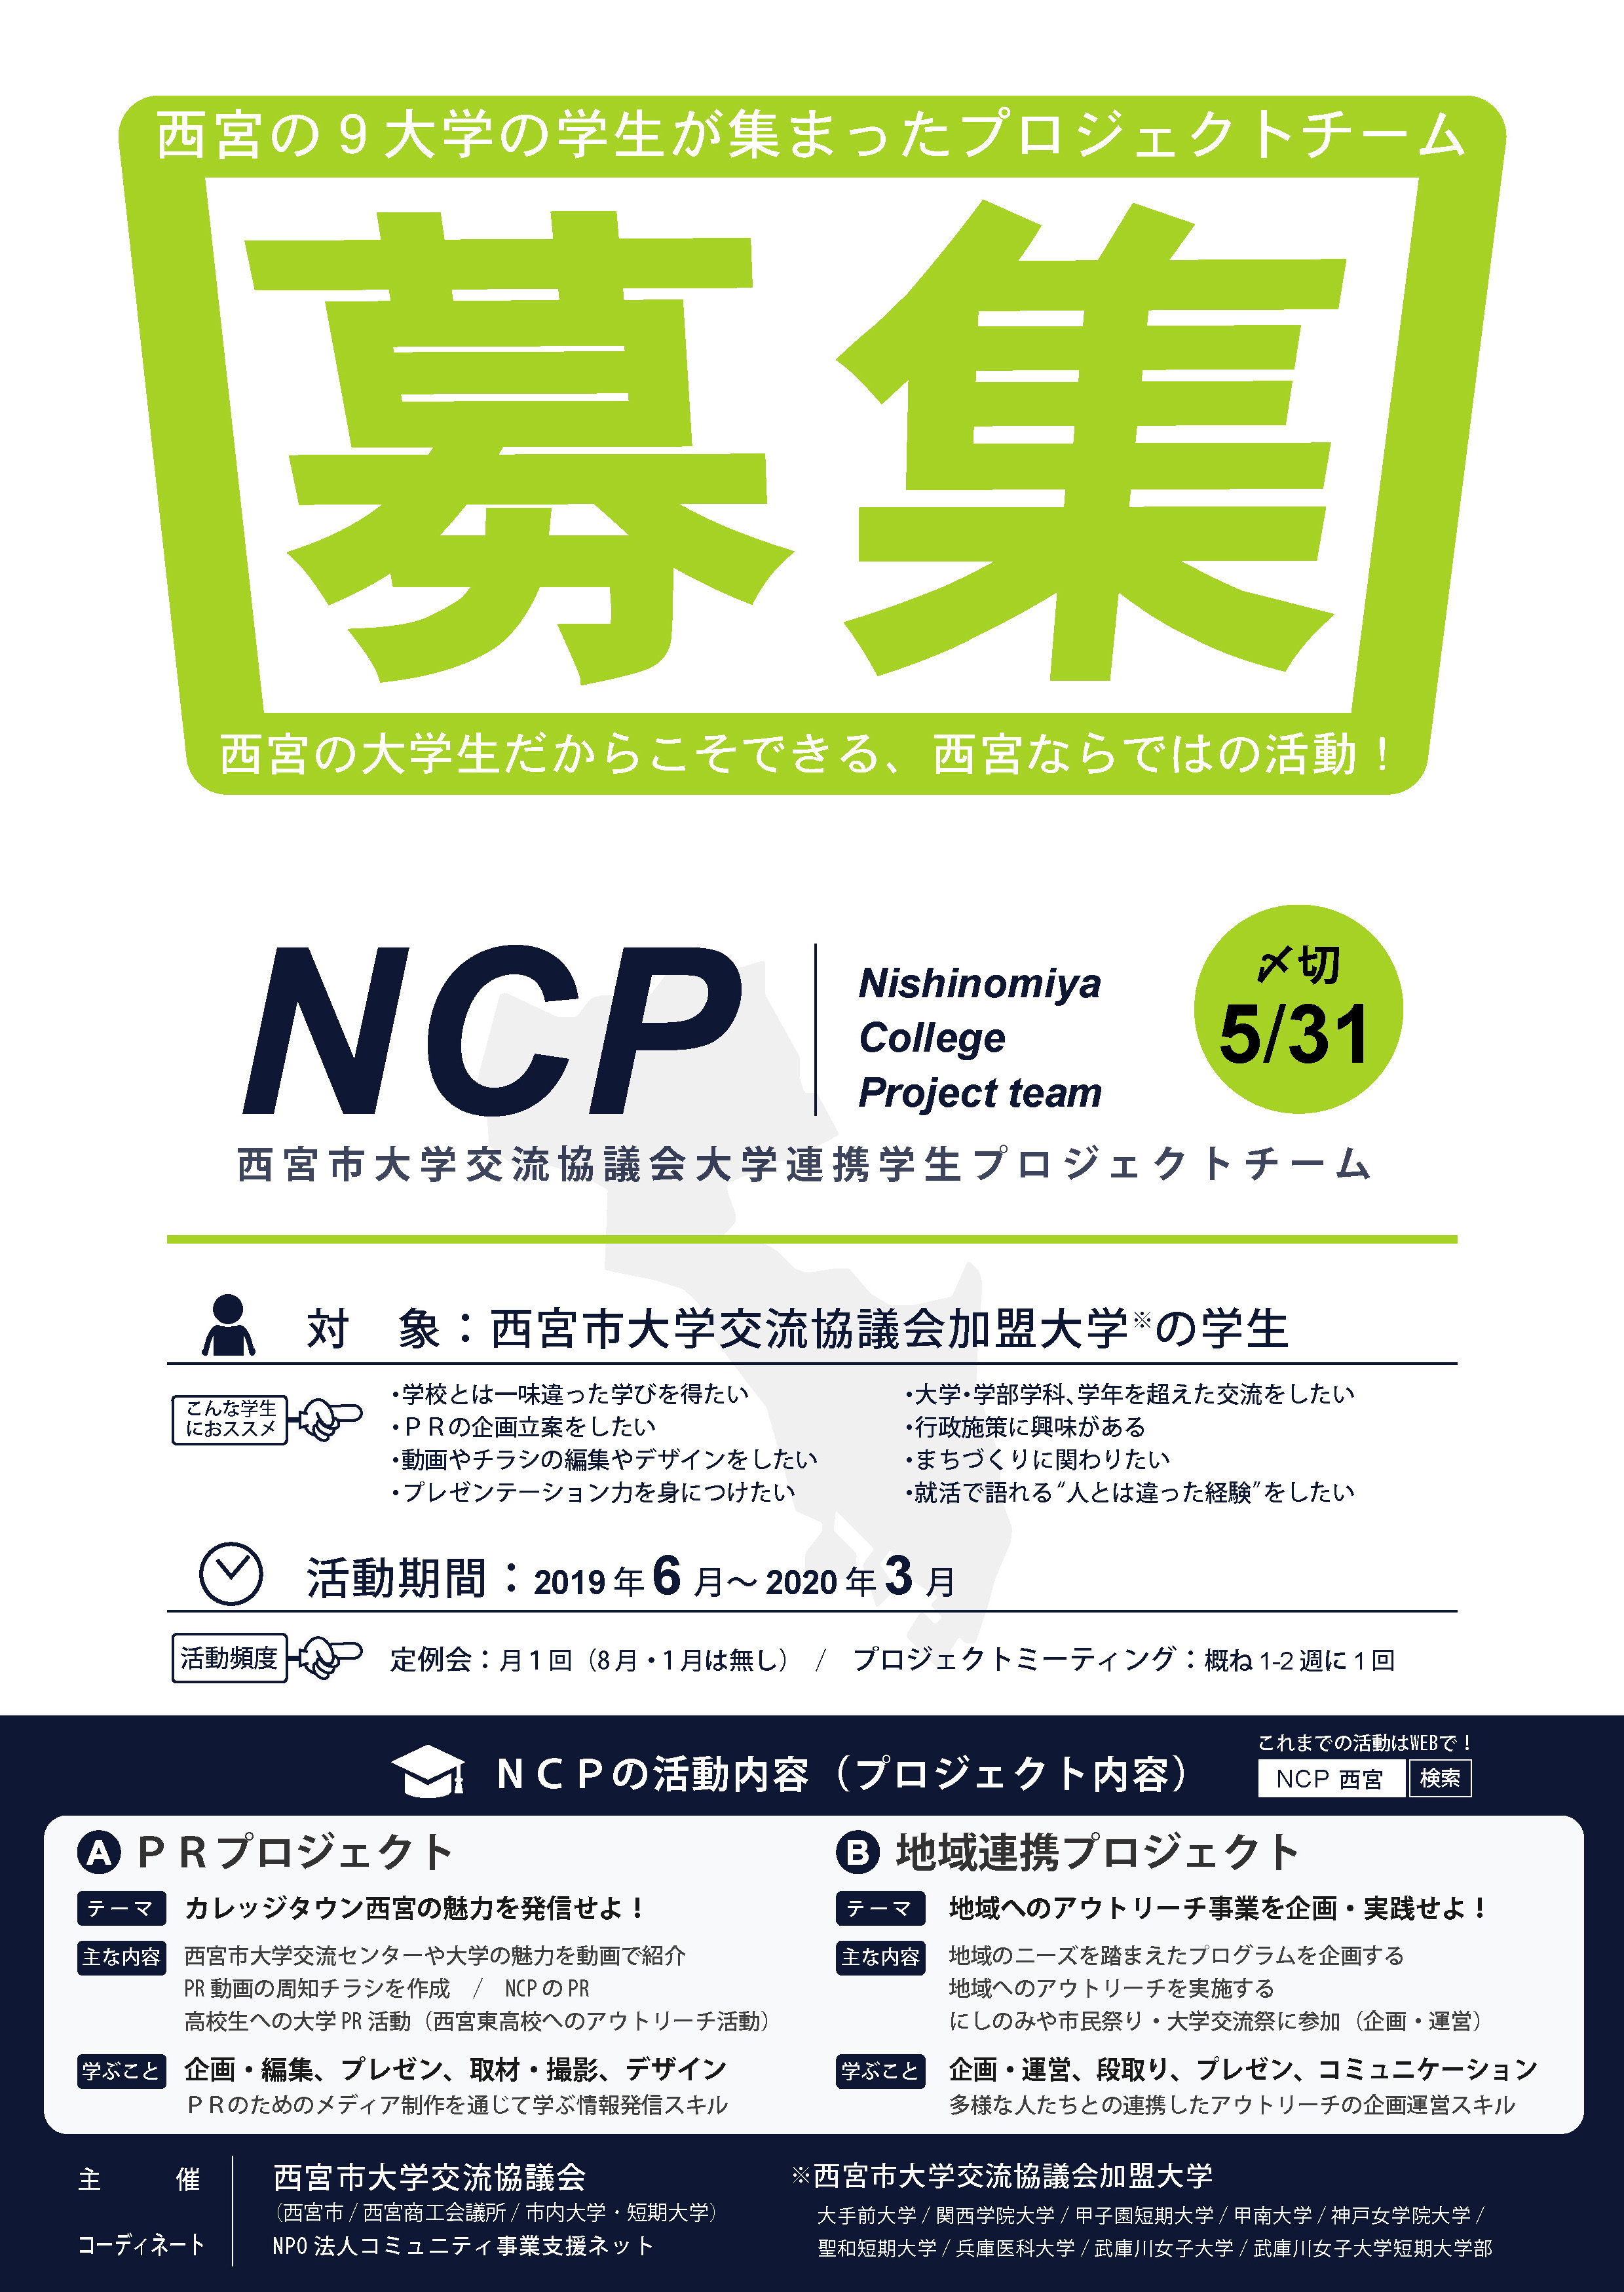 Ncp19メンバー募集チラシ 表 Npo法人コミュニティ事業支援ネット こみサポ 兵庫 西宮